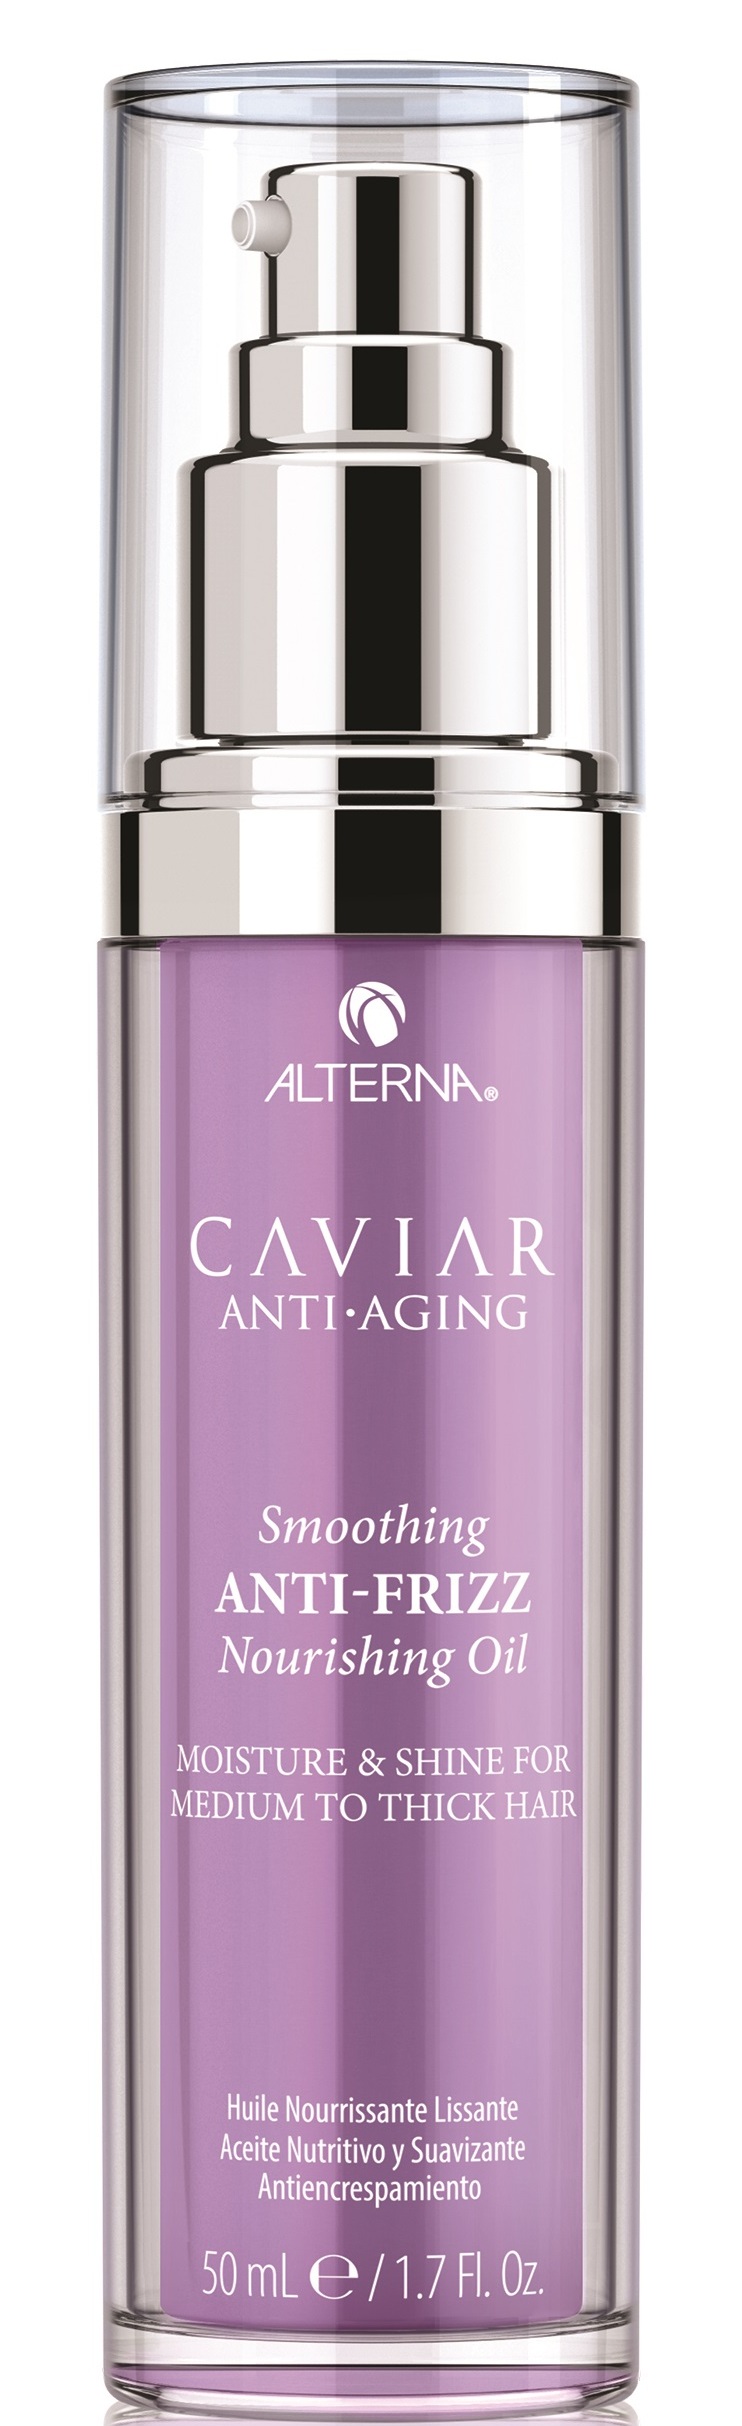 Питательное полирующее масло для контроля и гладкости - (Alterna Caviar Anti-Aging Smoothing Anti-Frizz Nourishing Oil)